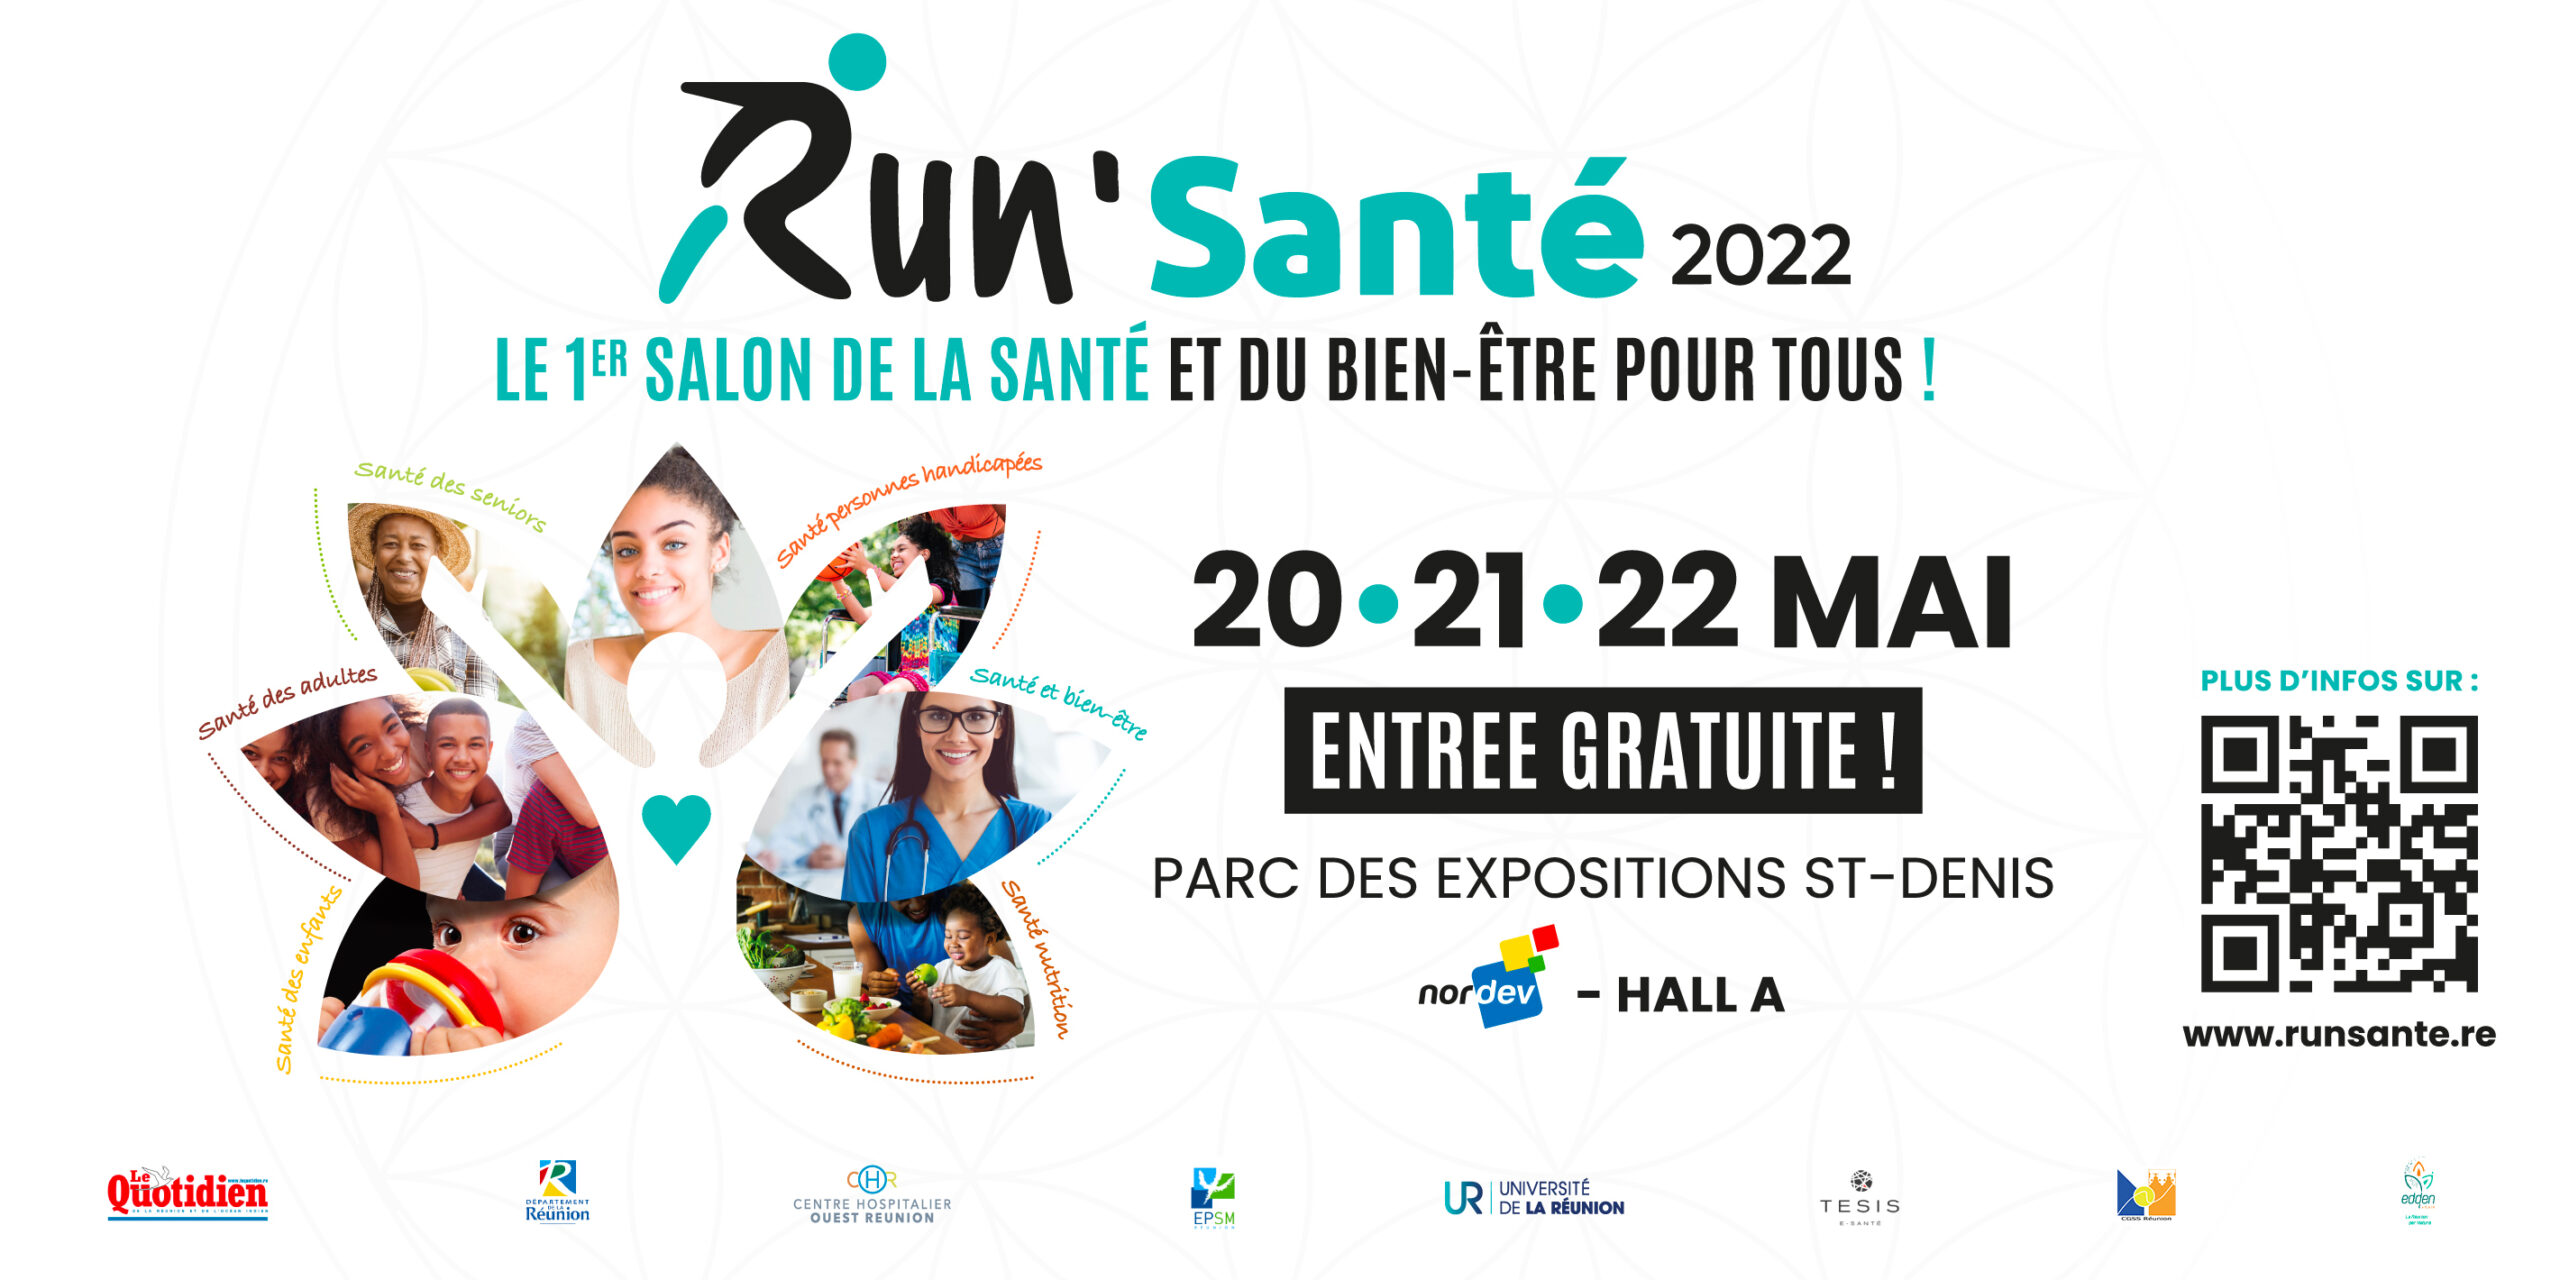 You are currently viewing Salon de la santé 2022